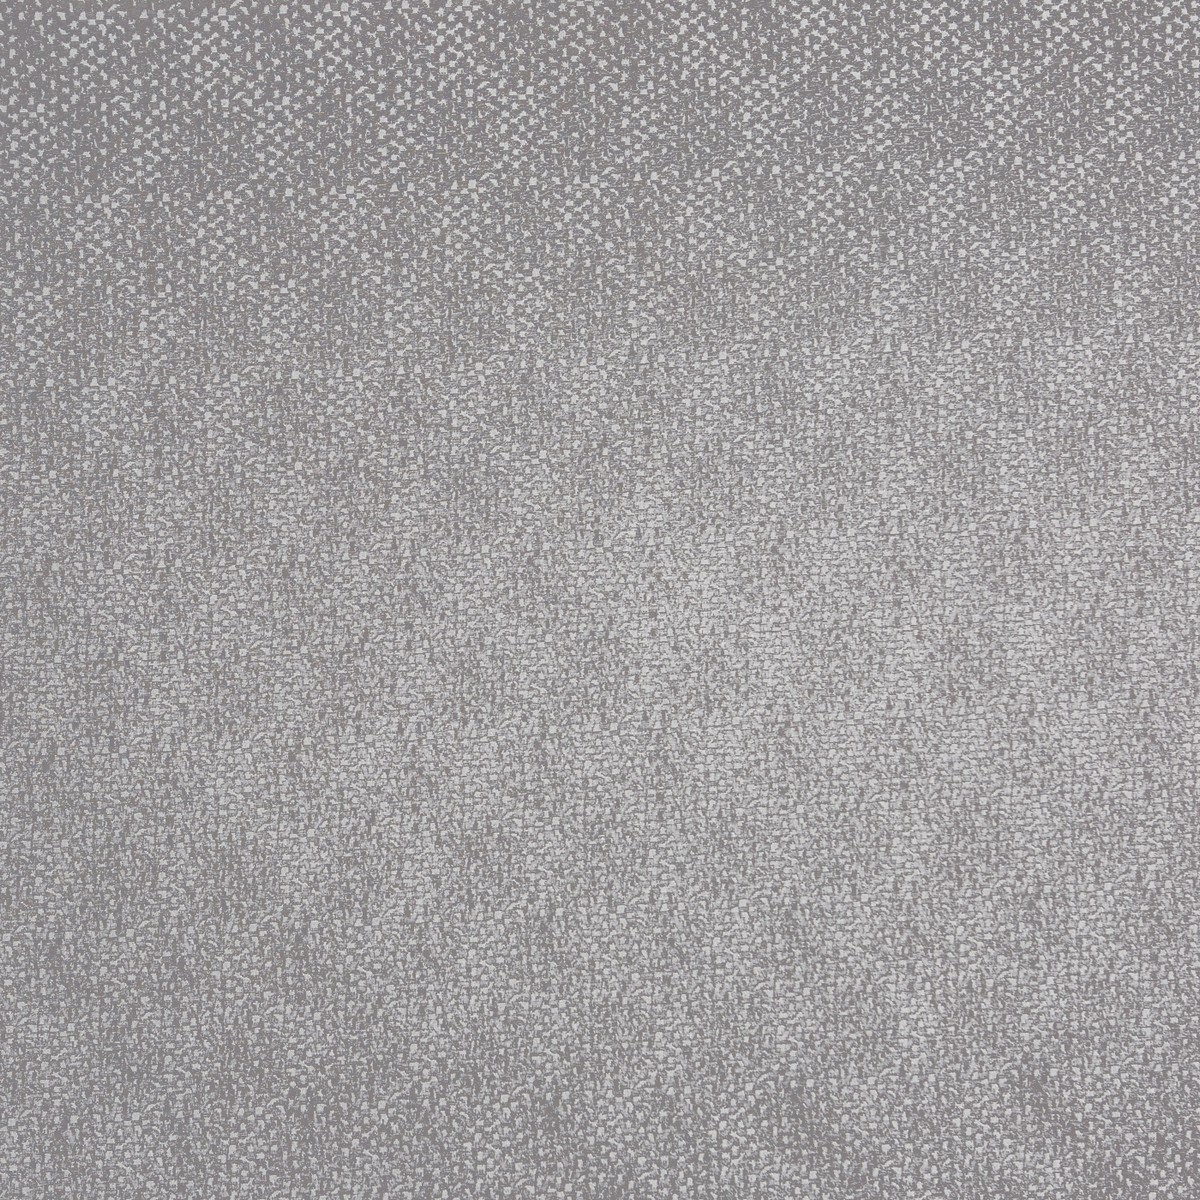 Annaliese Silver Fabric by Prestigious Textiles